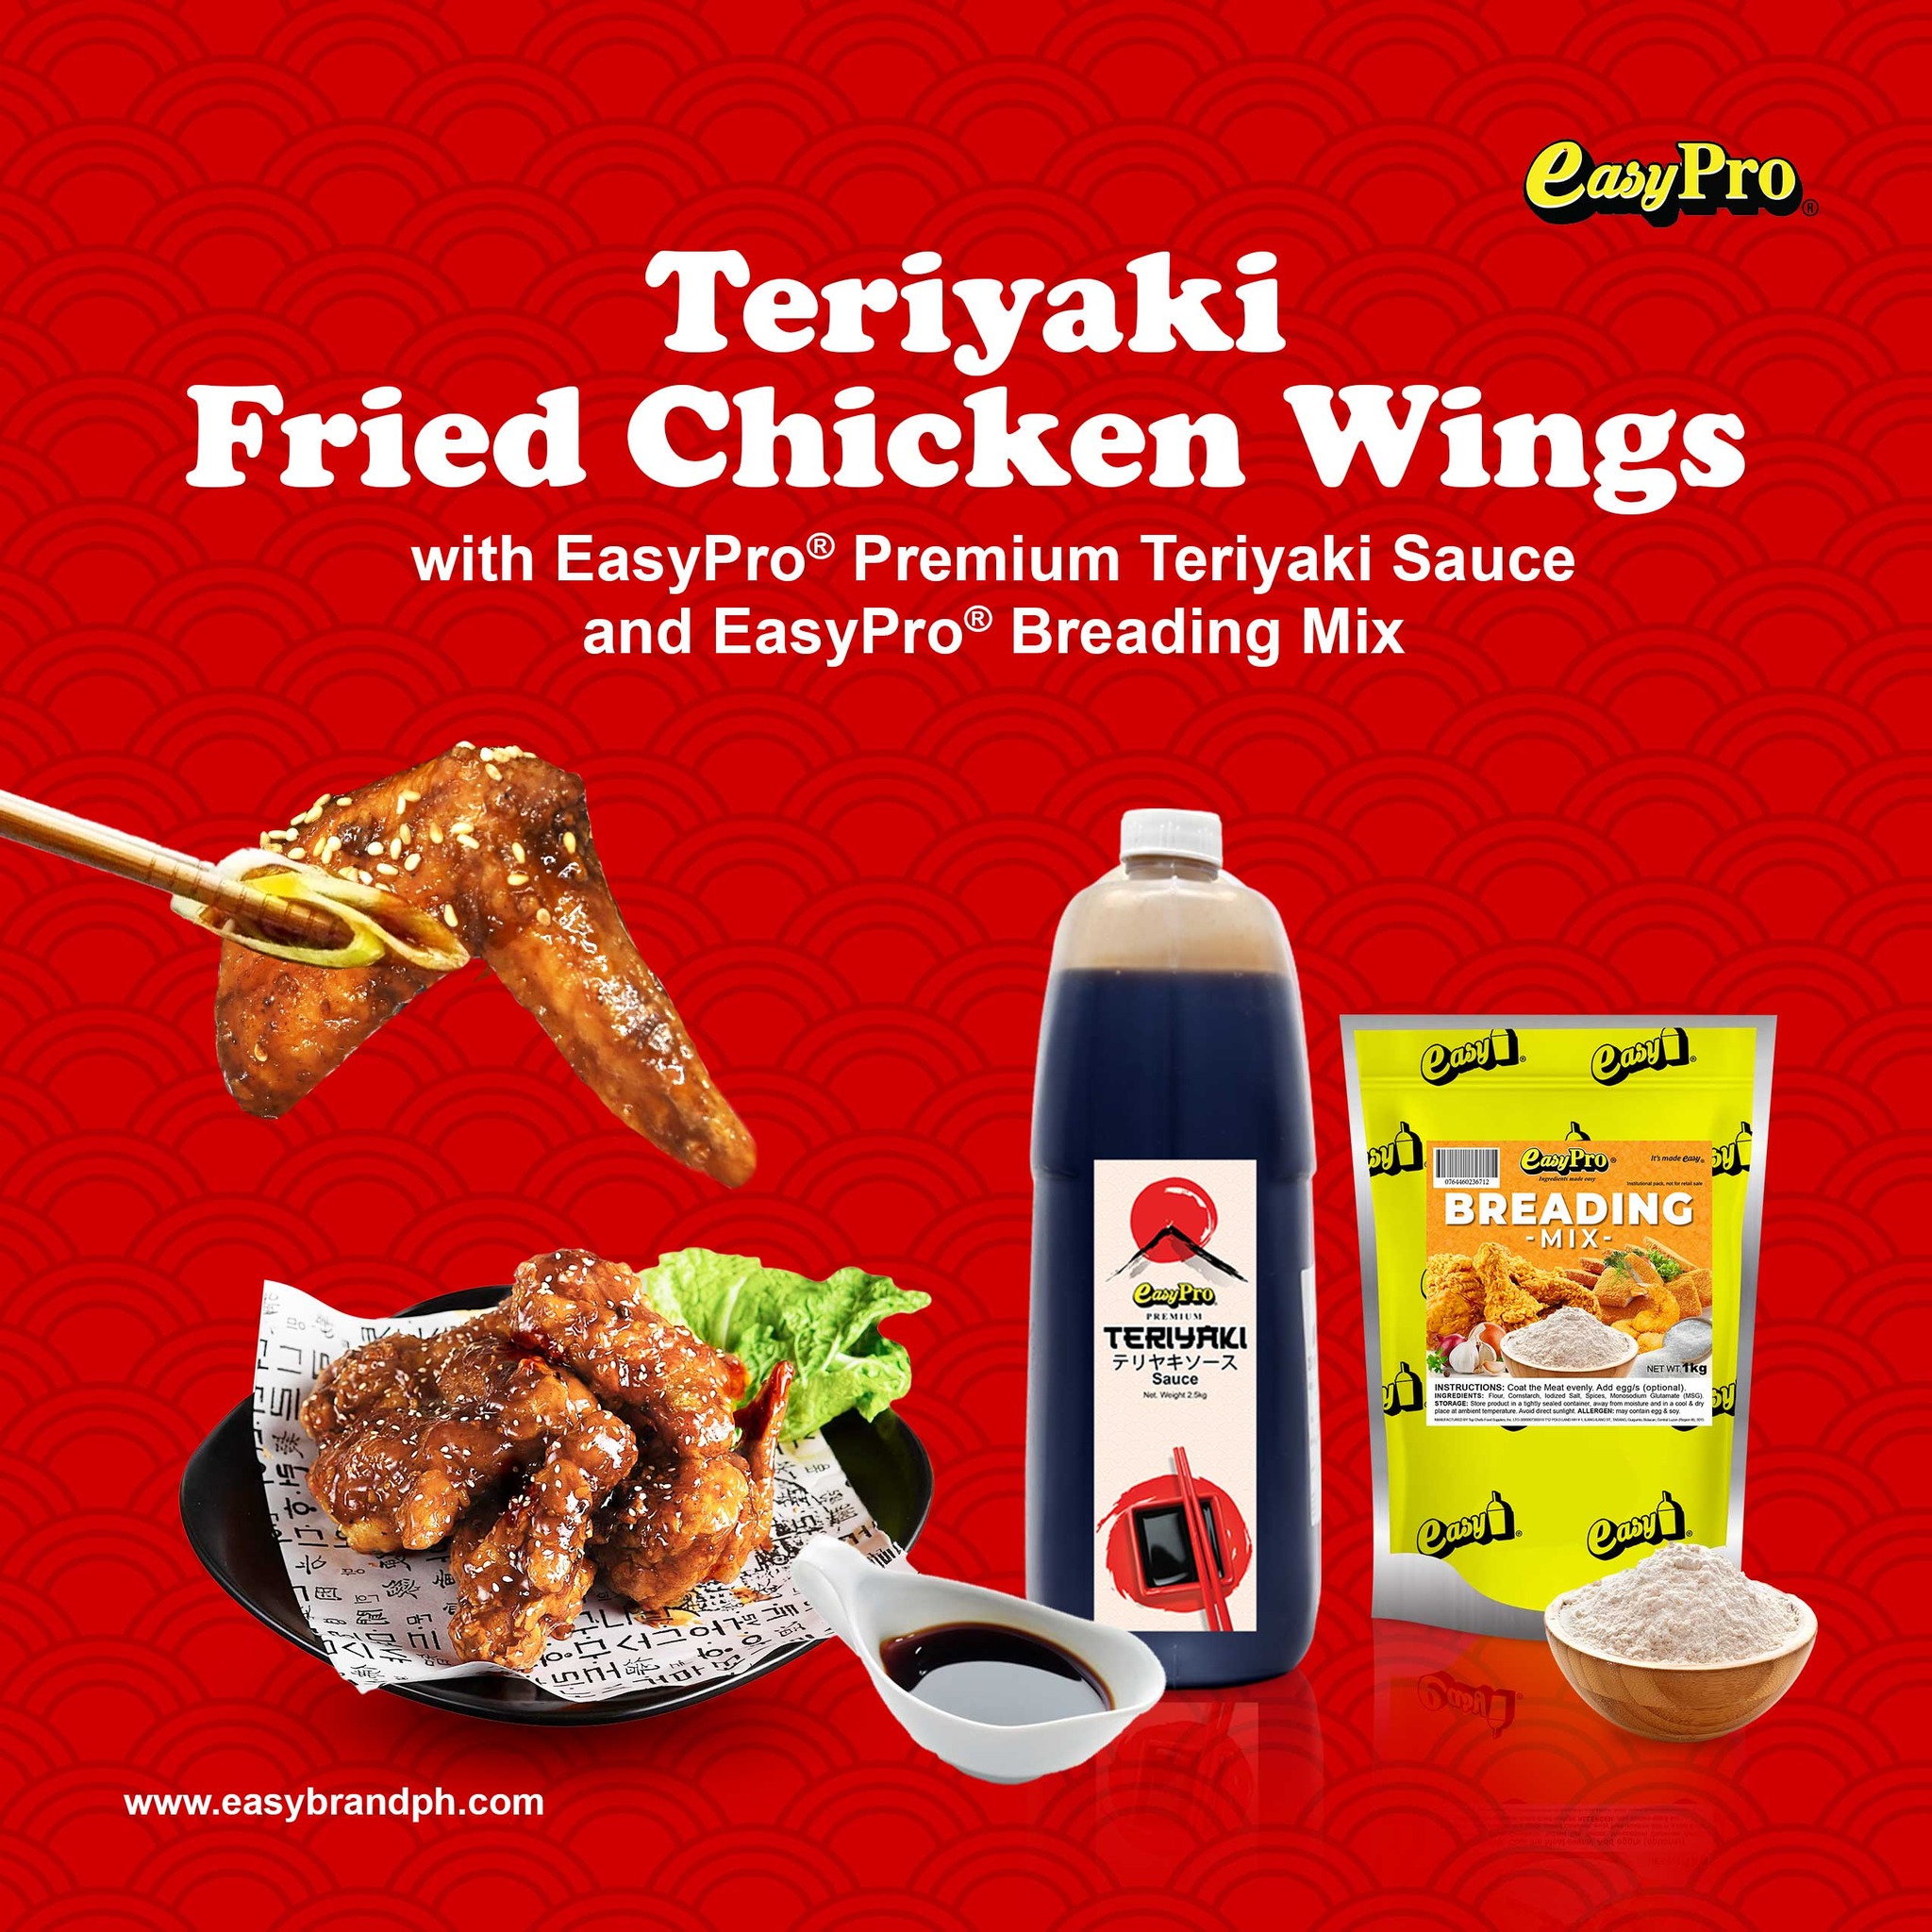 Teriyaki Fried Chicken Wings